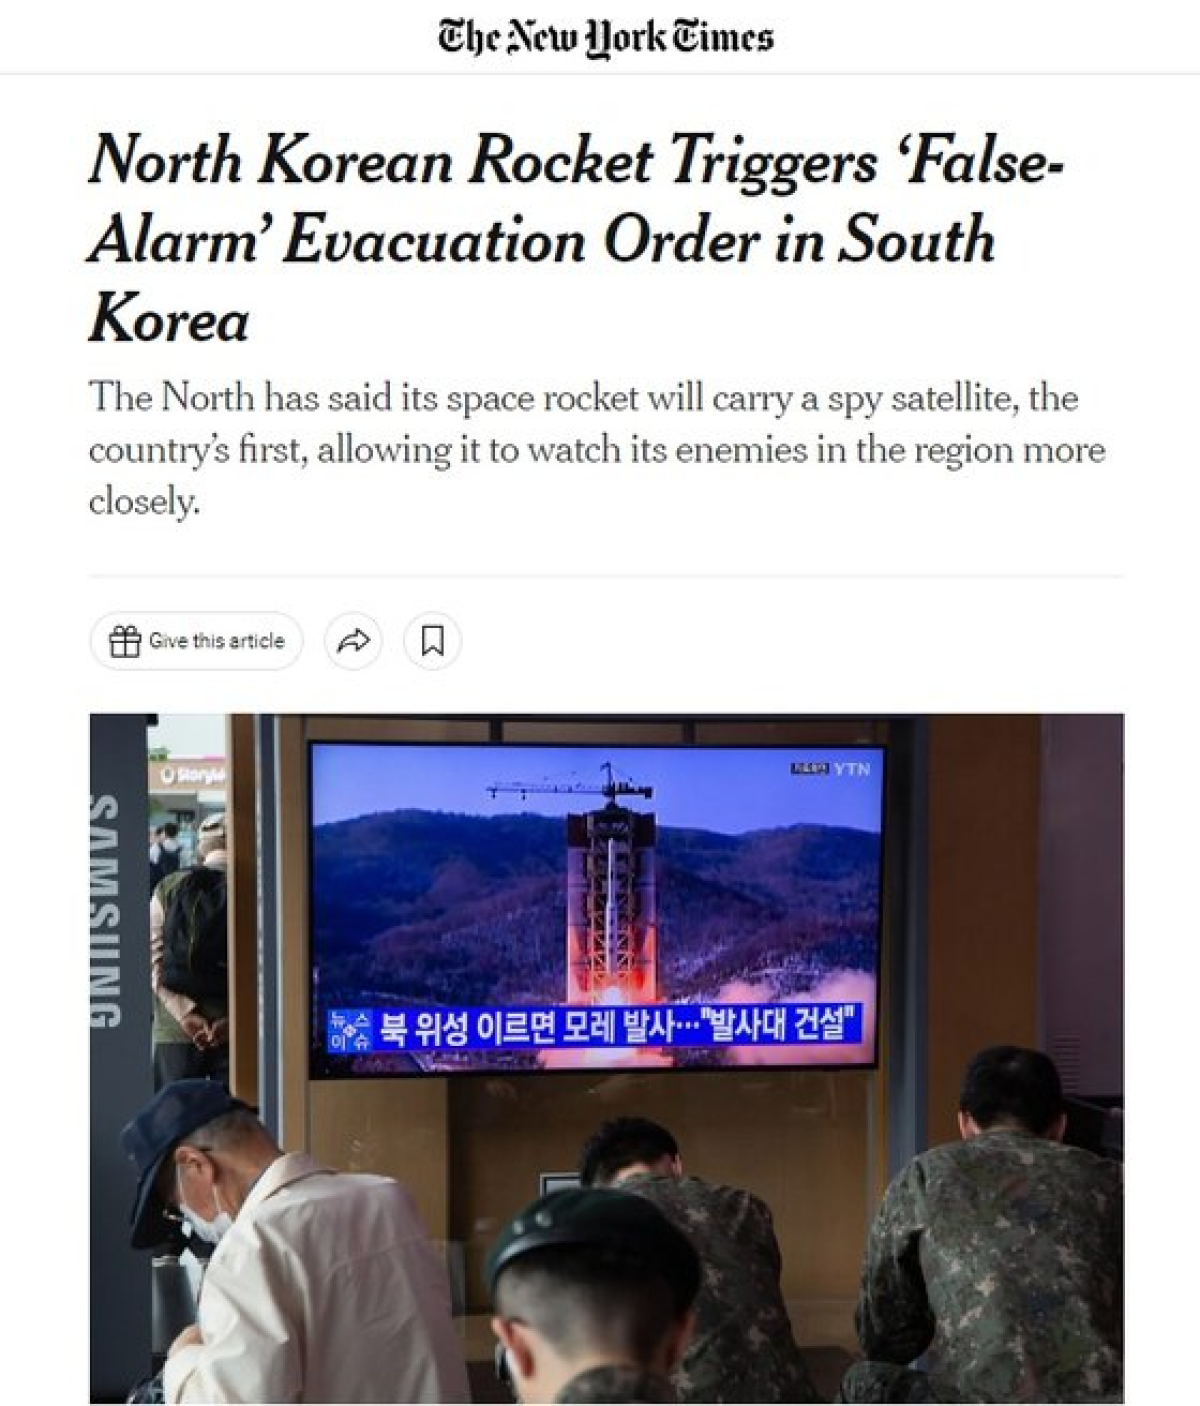 31일 한국의 대피 경보 소동 소식을 전한 뉴욕타임스. 뉴욕타임스 홈페이지 캡처